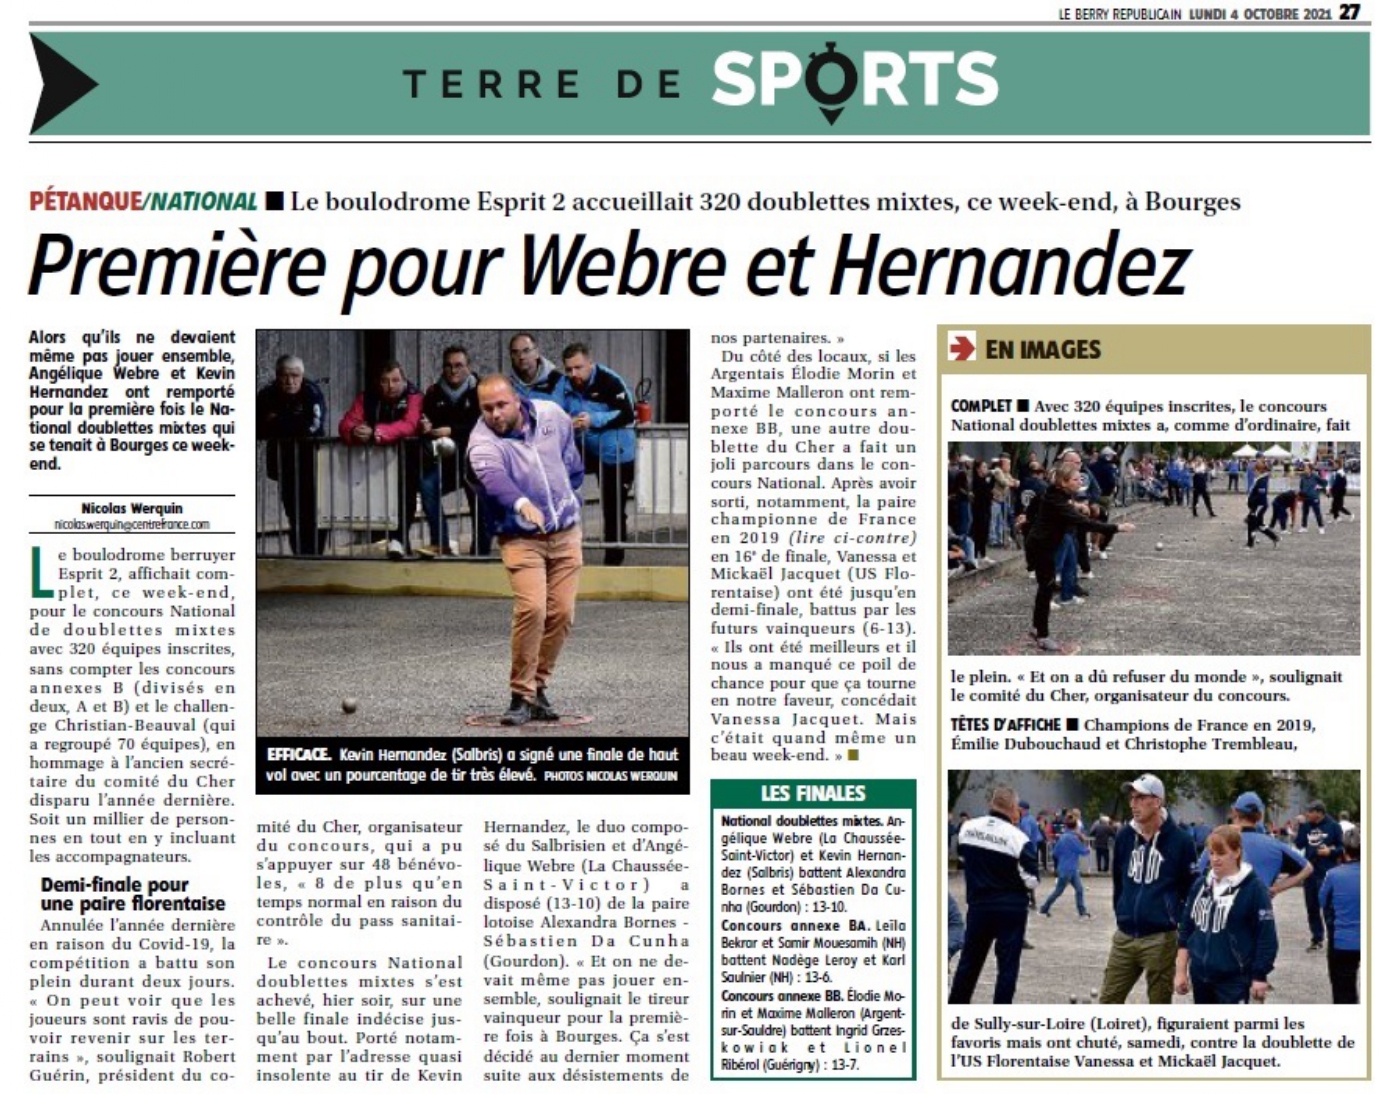 Le 9éme National de Bourges c'est achevé par la victoire de K. Hernandez et A. Webre (41) au bout d'une belle finale. Rendez vous en 2022 pour la 10éme édition